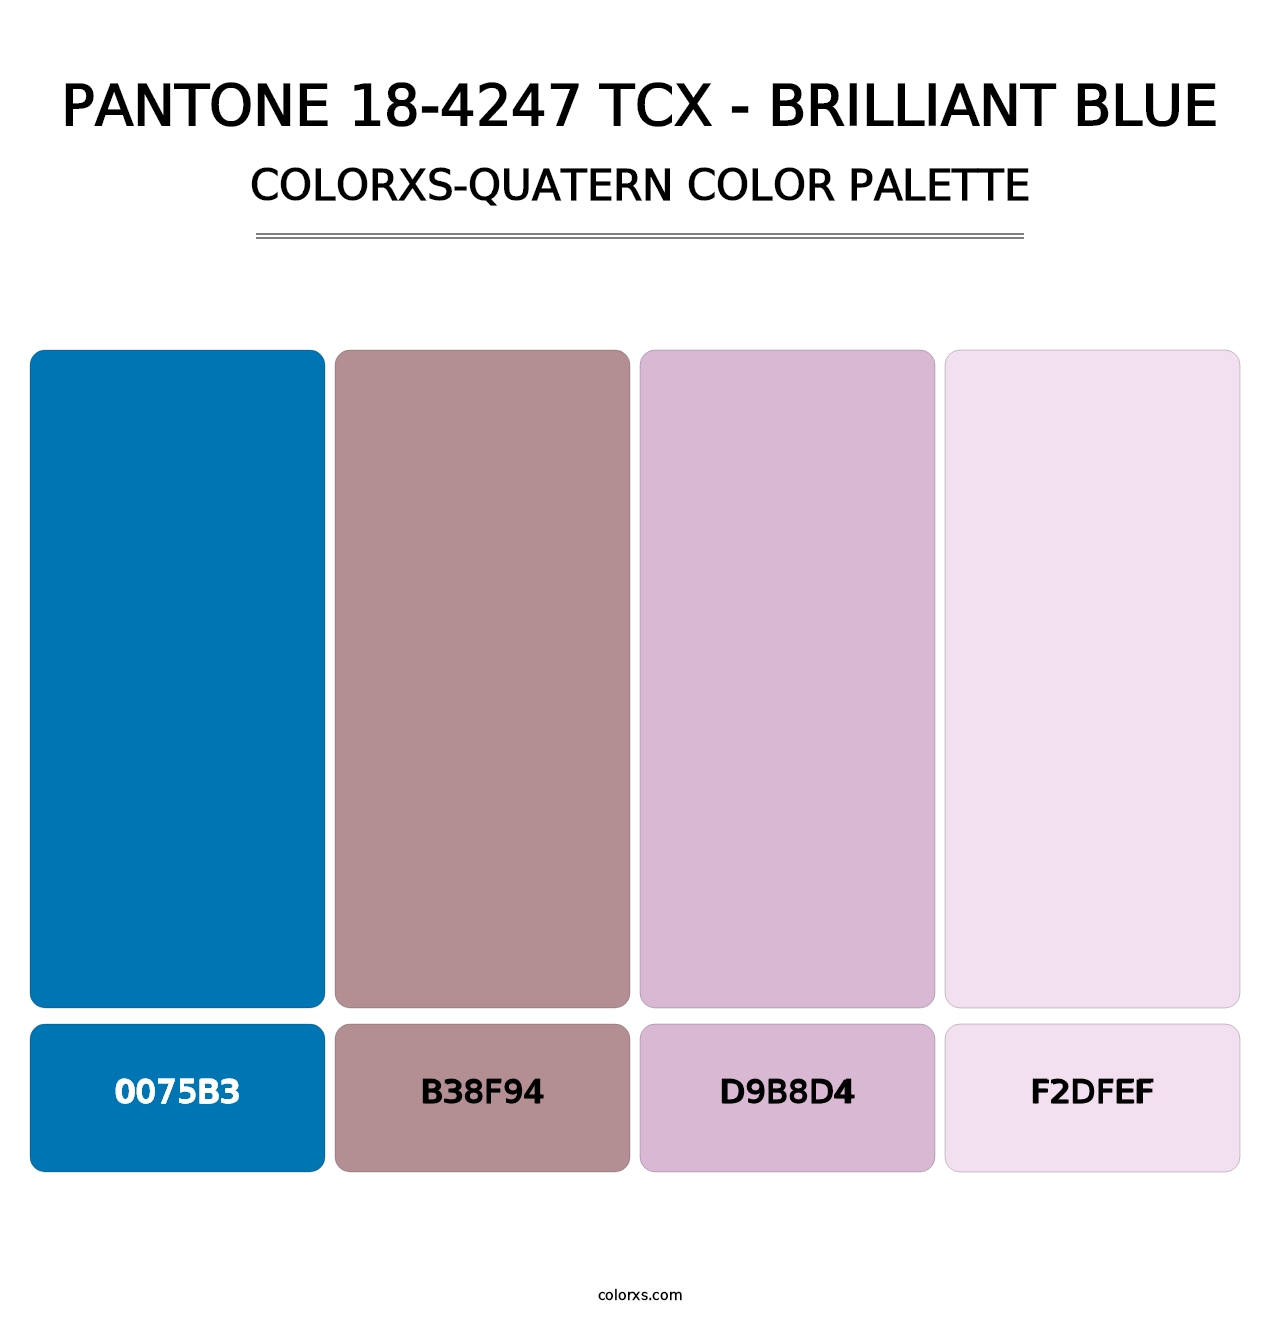 PANTONE 18-4247 TCX - Brilliant Blue - Colorxs Quatern Palette